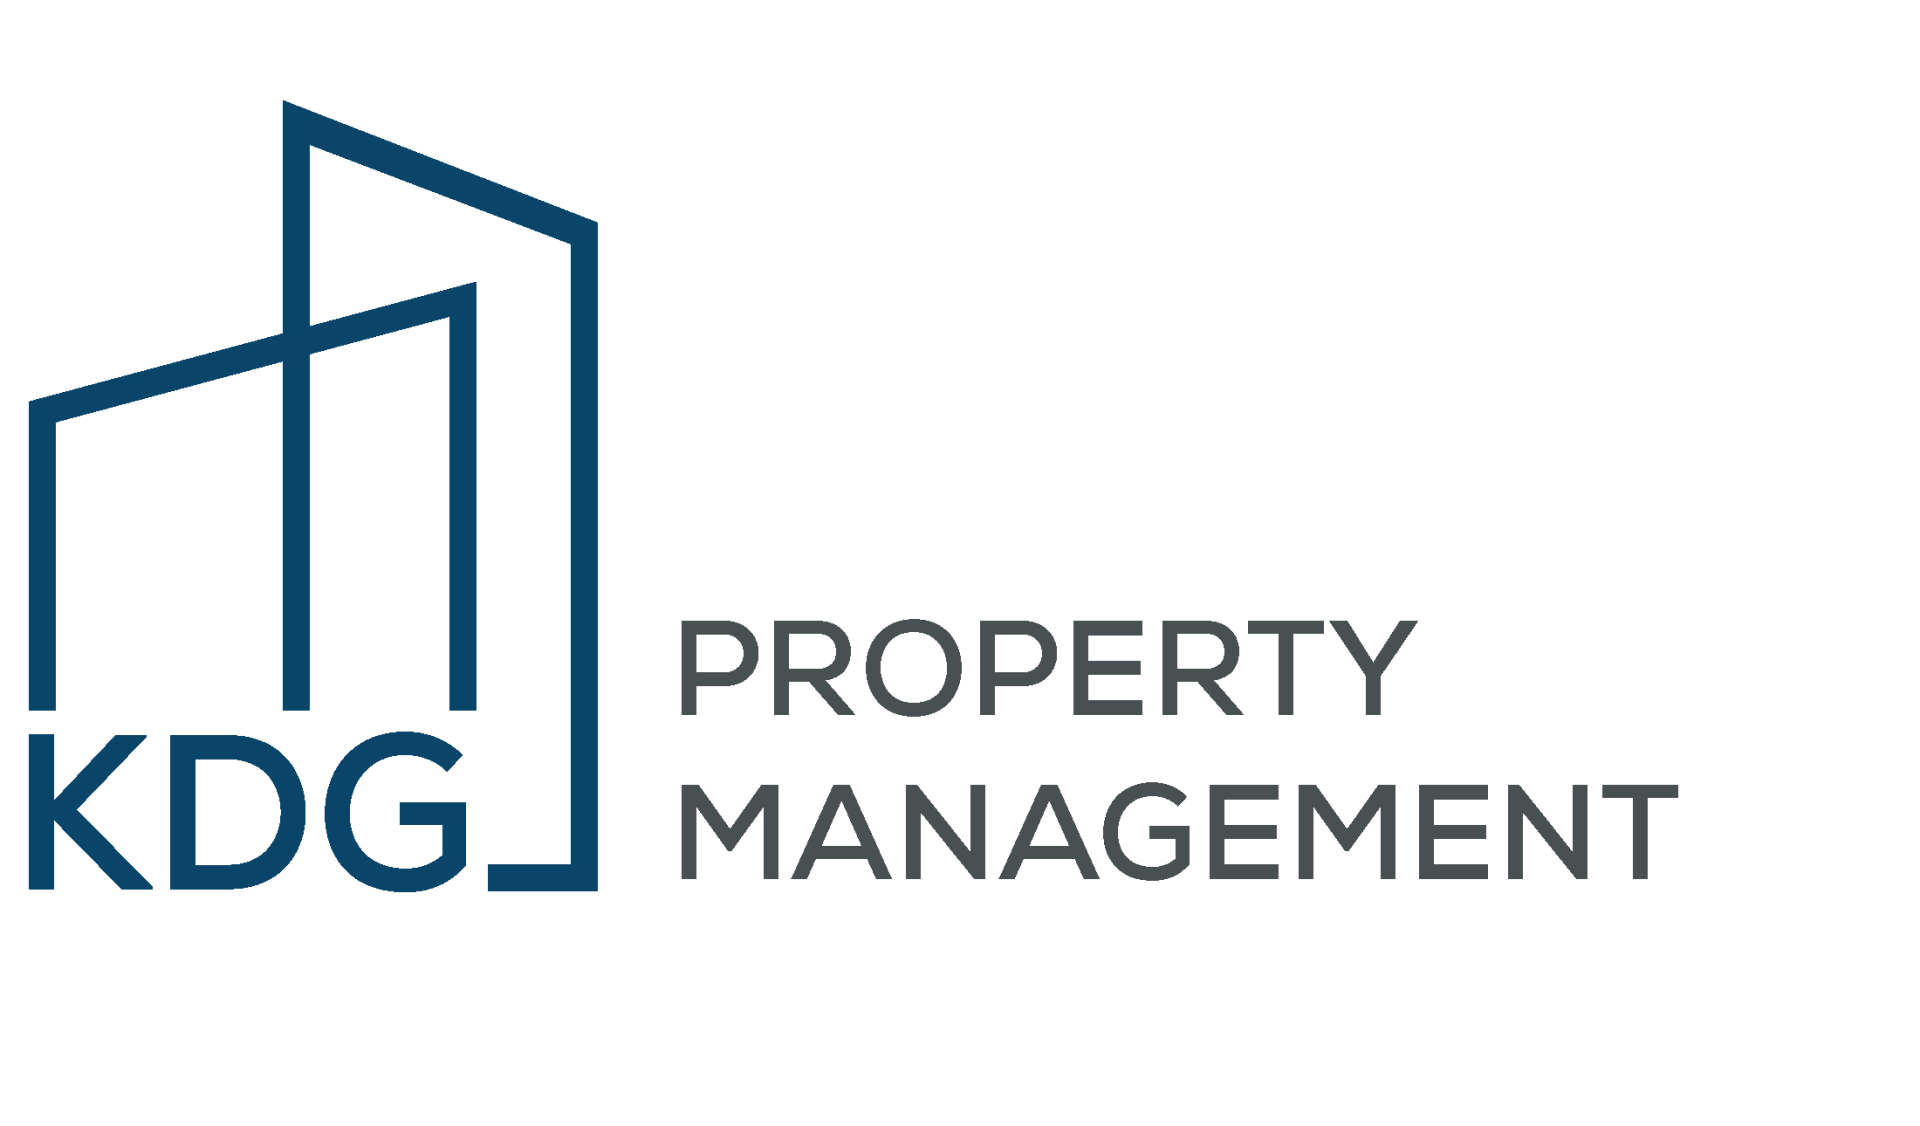 KDG Property Management Header Logo - Select To Go Home